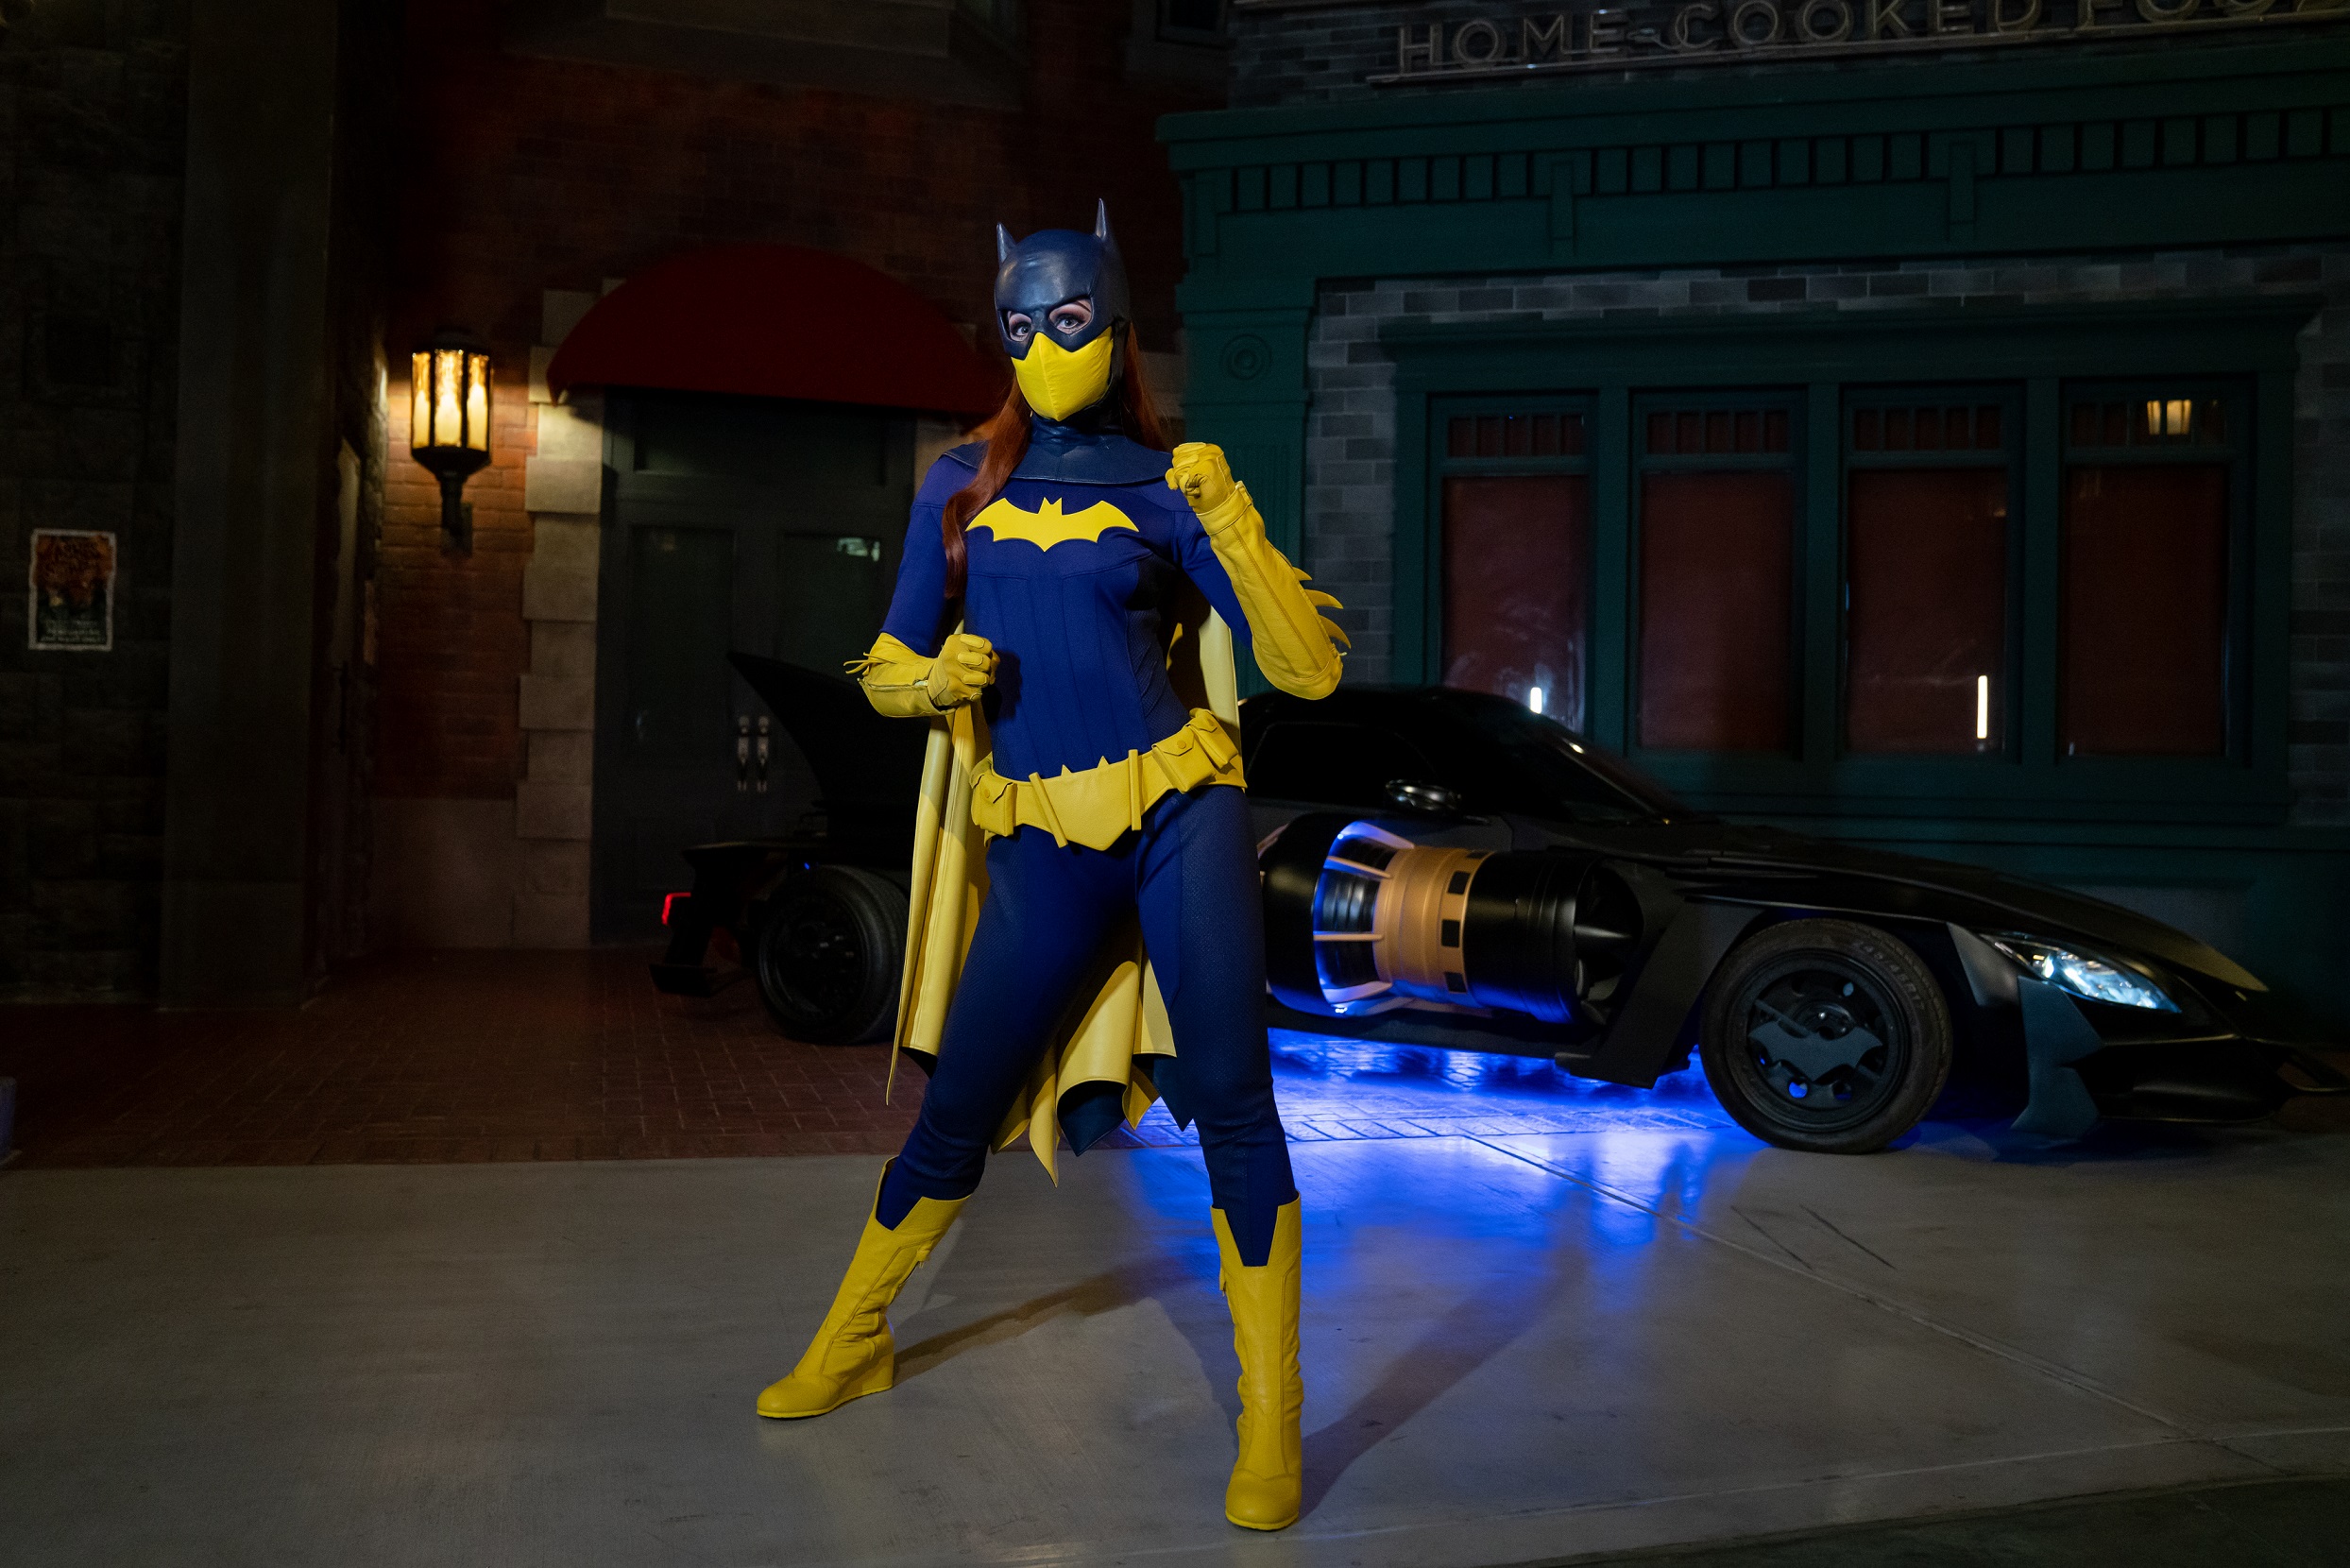 Warner Bros. World™ Abu Dhabi Welcomes A New DC Super Hero